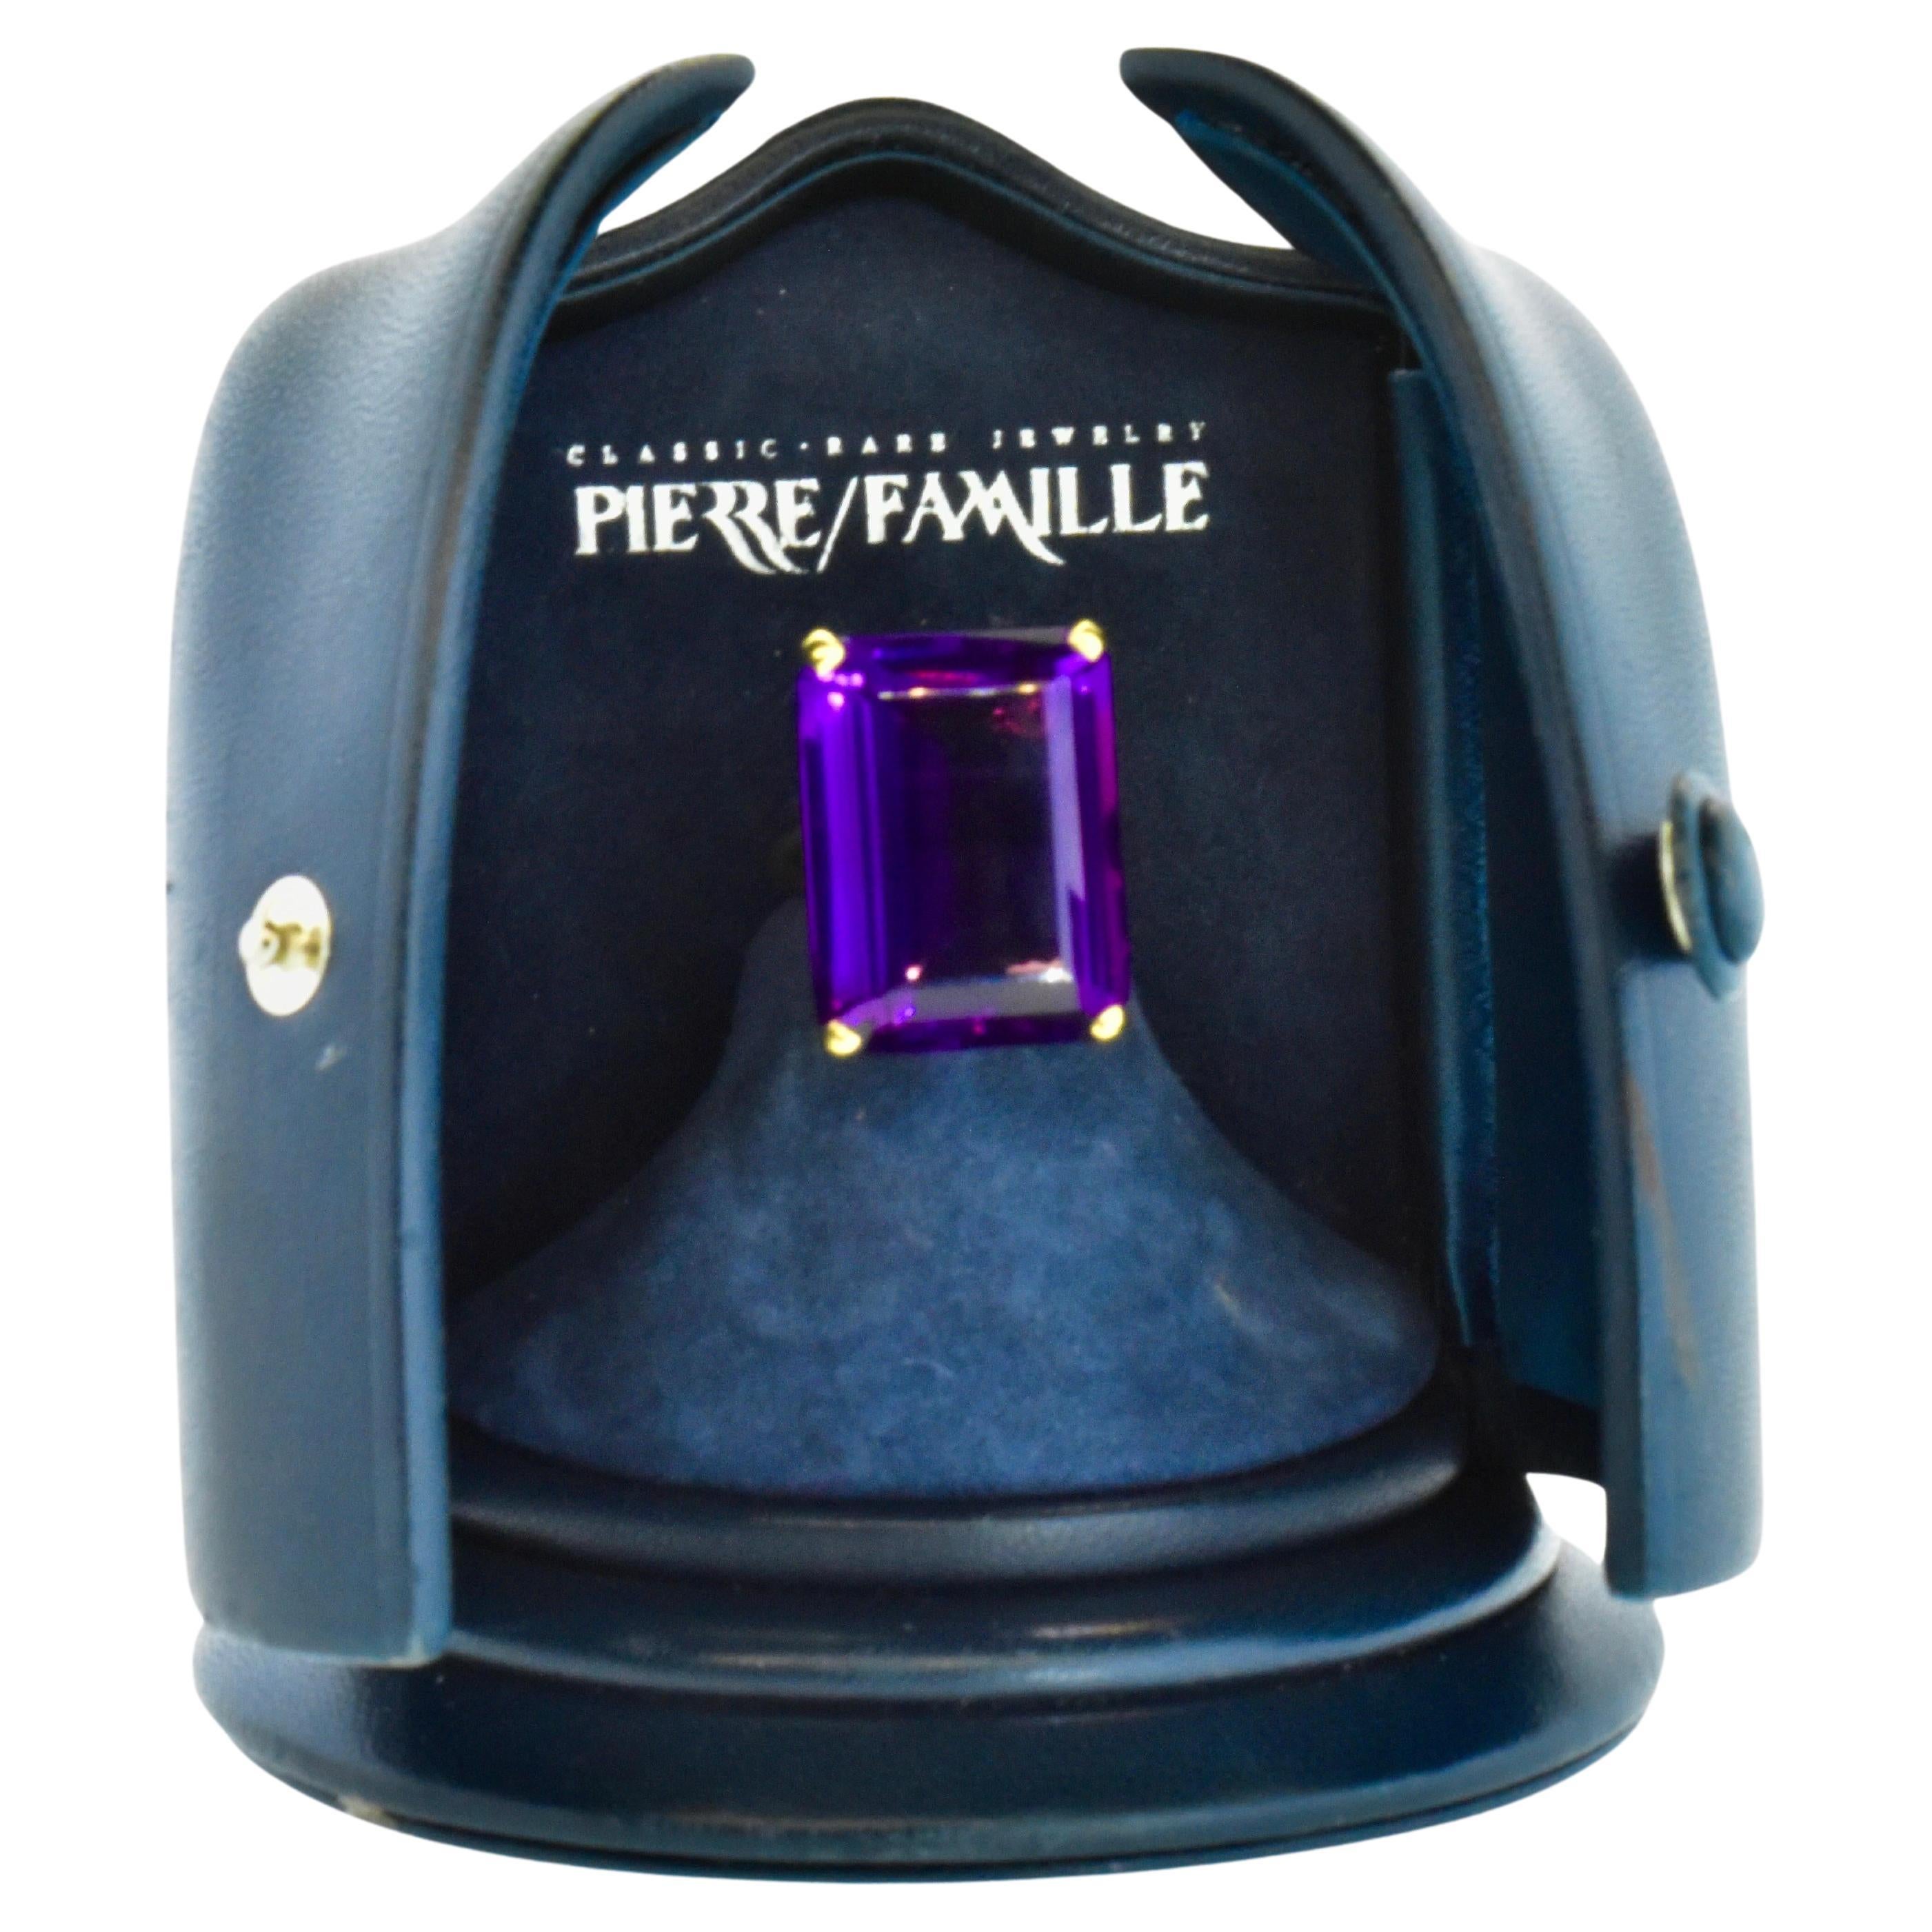 18K Fine Deep Purple Amethyst, 26.21 cts., 18K Ring by Pierre/Famille. For Sale